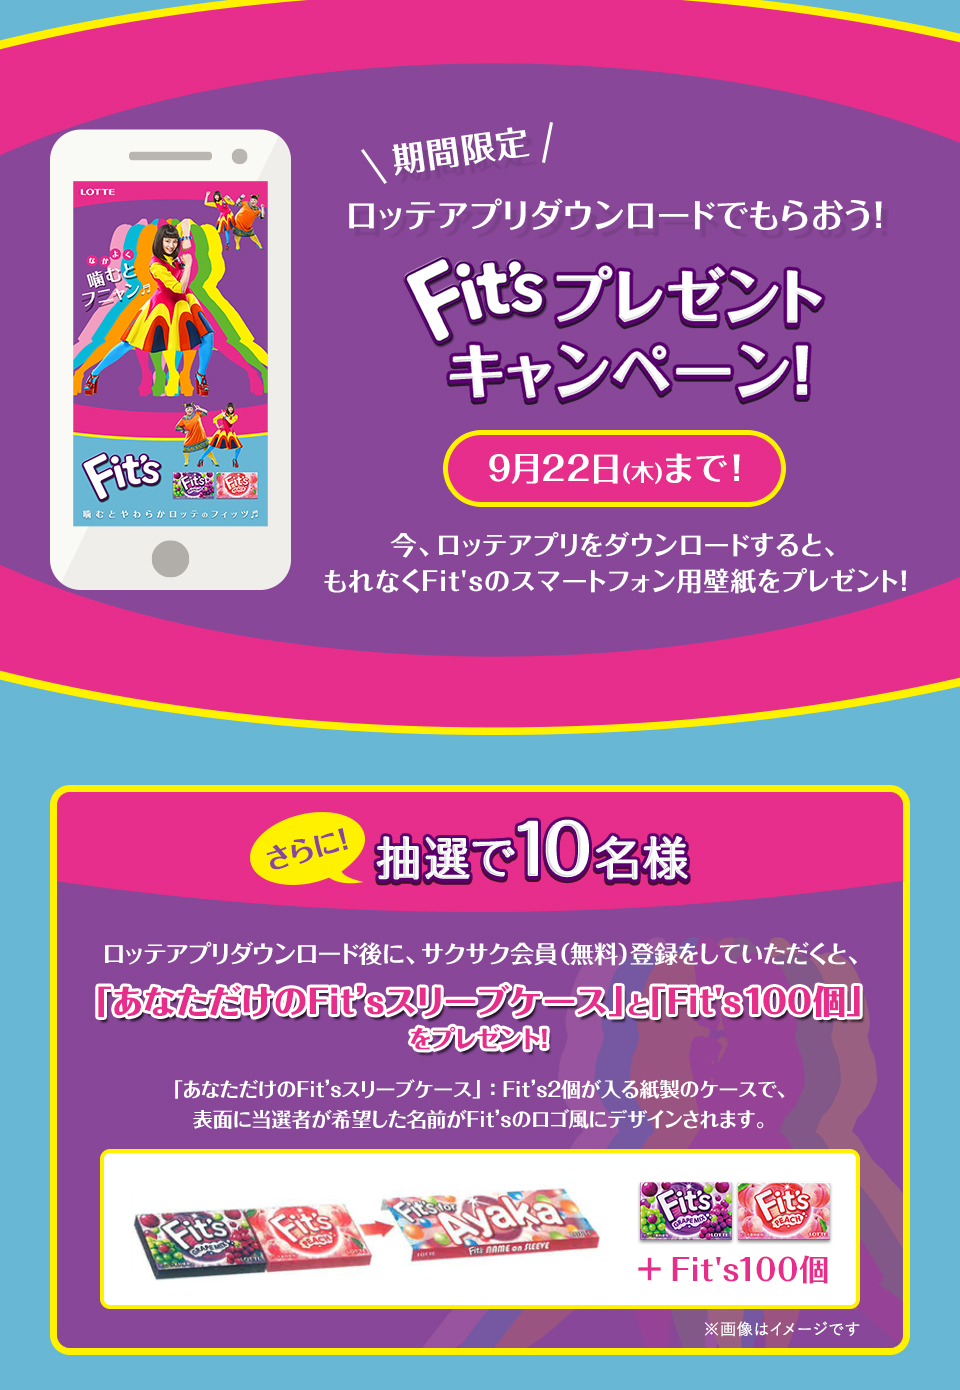 ロッテアプリ Fit Sプレゼントキャンペーン 壁紙ダウンロード Lotte Group公式オンラインモール